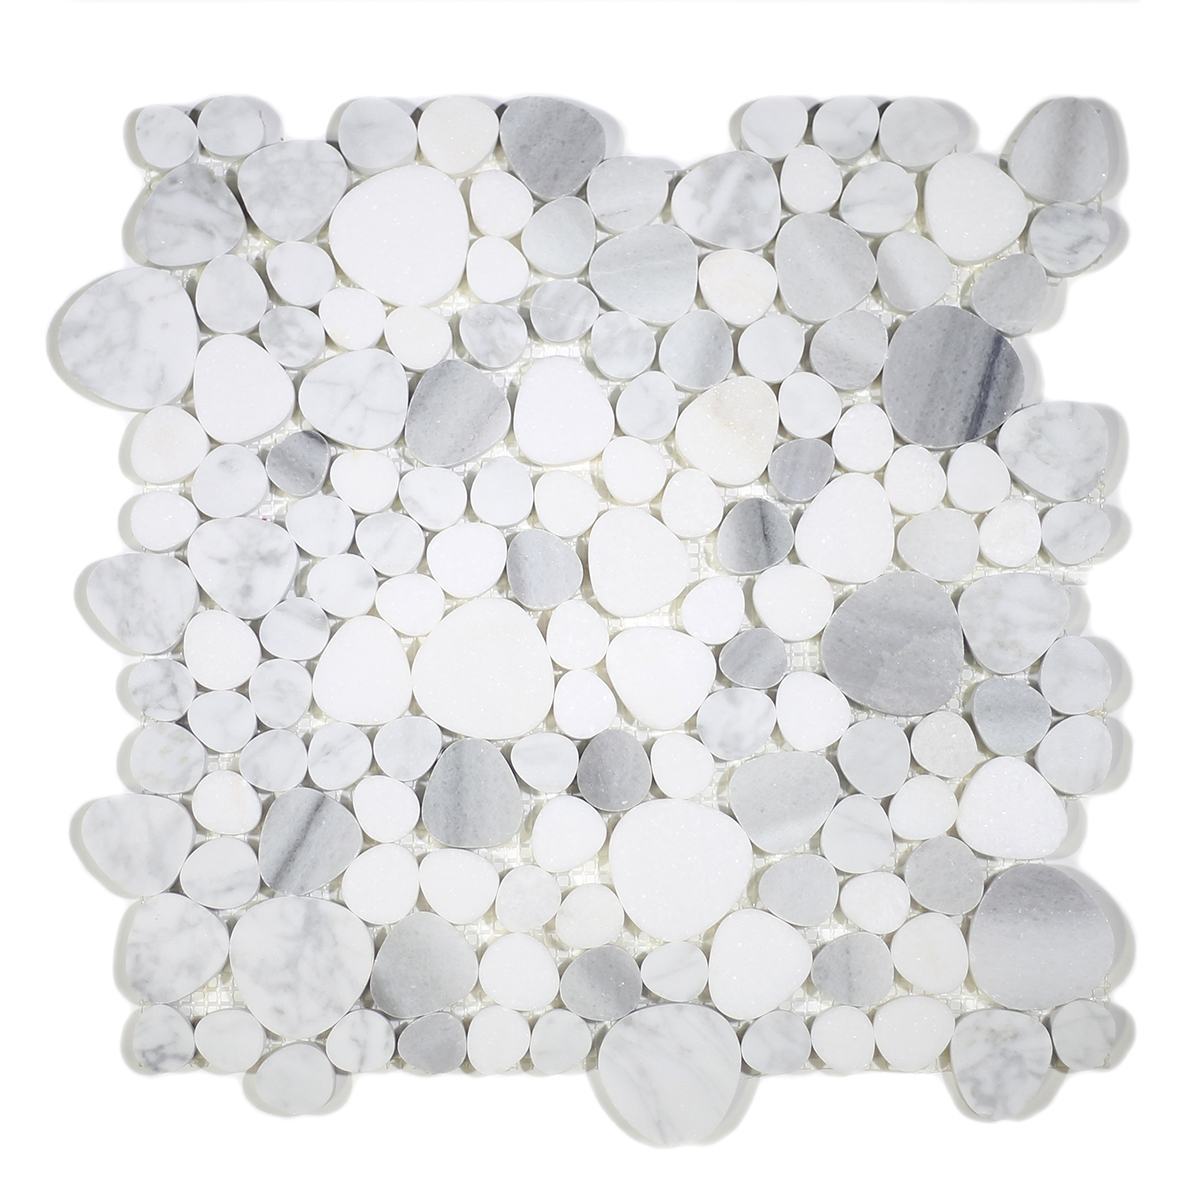 MA244-PB HONED Pebbles Carrara white, Thassos and Marwa White